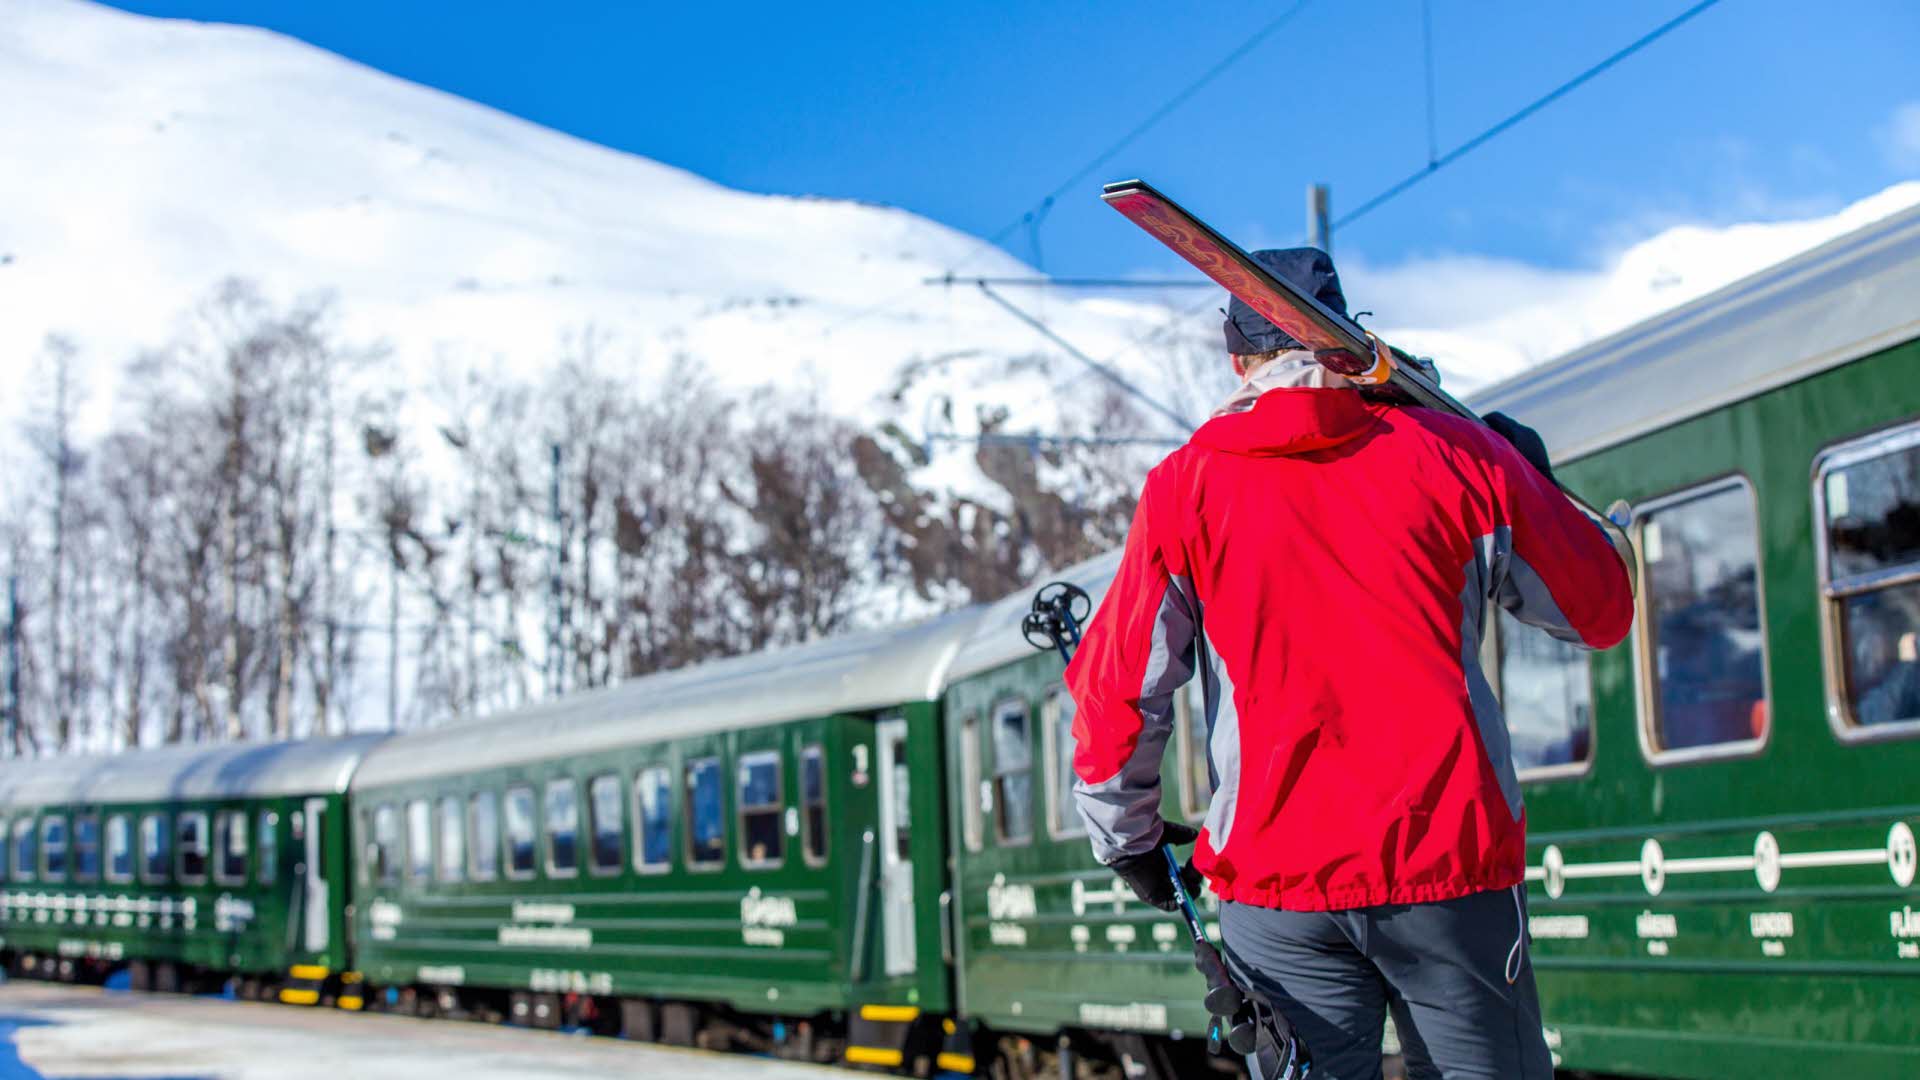 Un homme portant des skis sur ses épaules à côté d’un train du chemin de fer de Flåm, sur fond de montagnes enneigées.